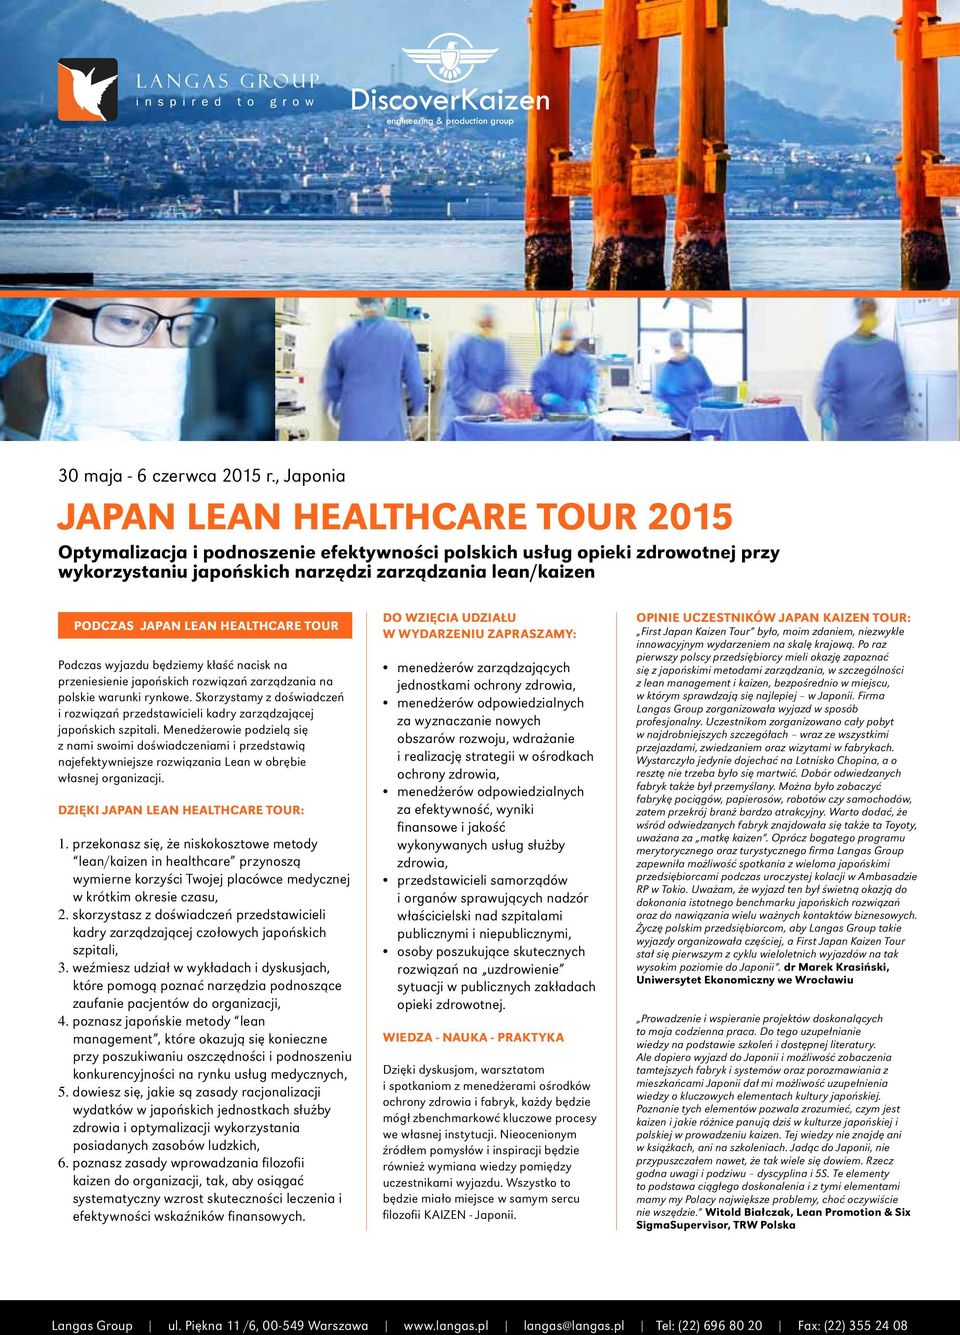 Menedżerowie podzielą się z nami swoimi doświadczeniami i przedstawią najefektywniejsze rozwiązania Lean w obrębie własnej organizacji. Dzięki Japan Lean Healthcare Tour: 1.